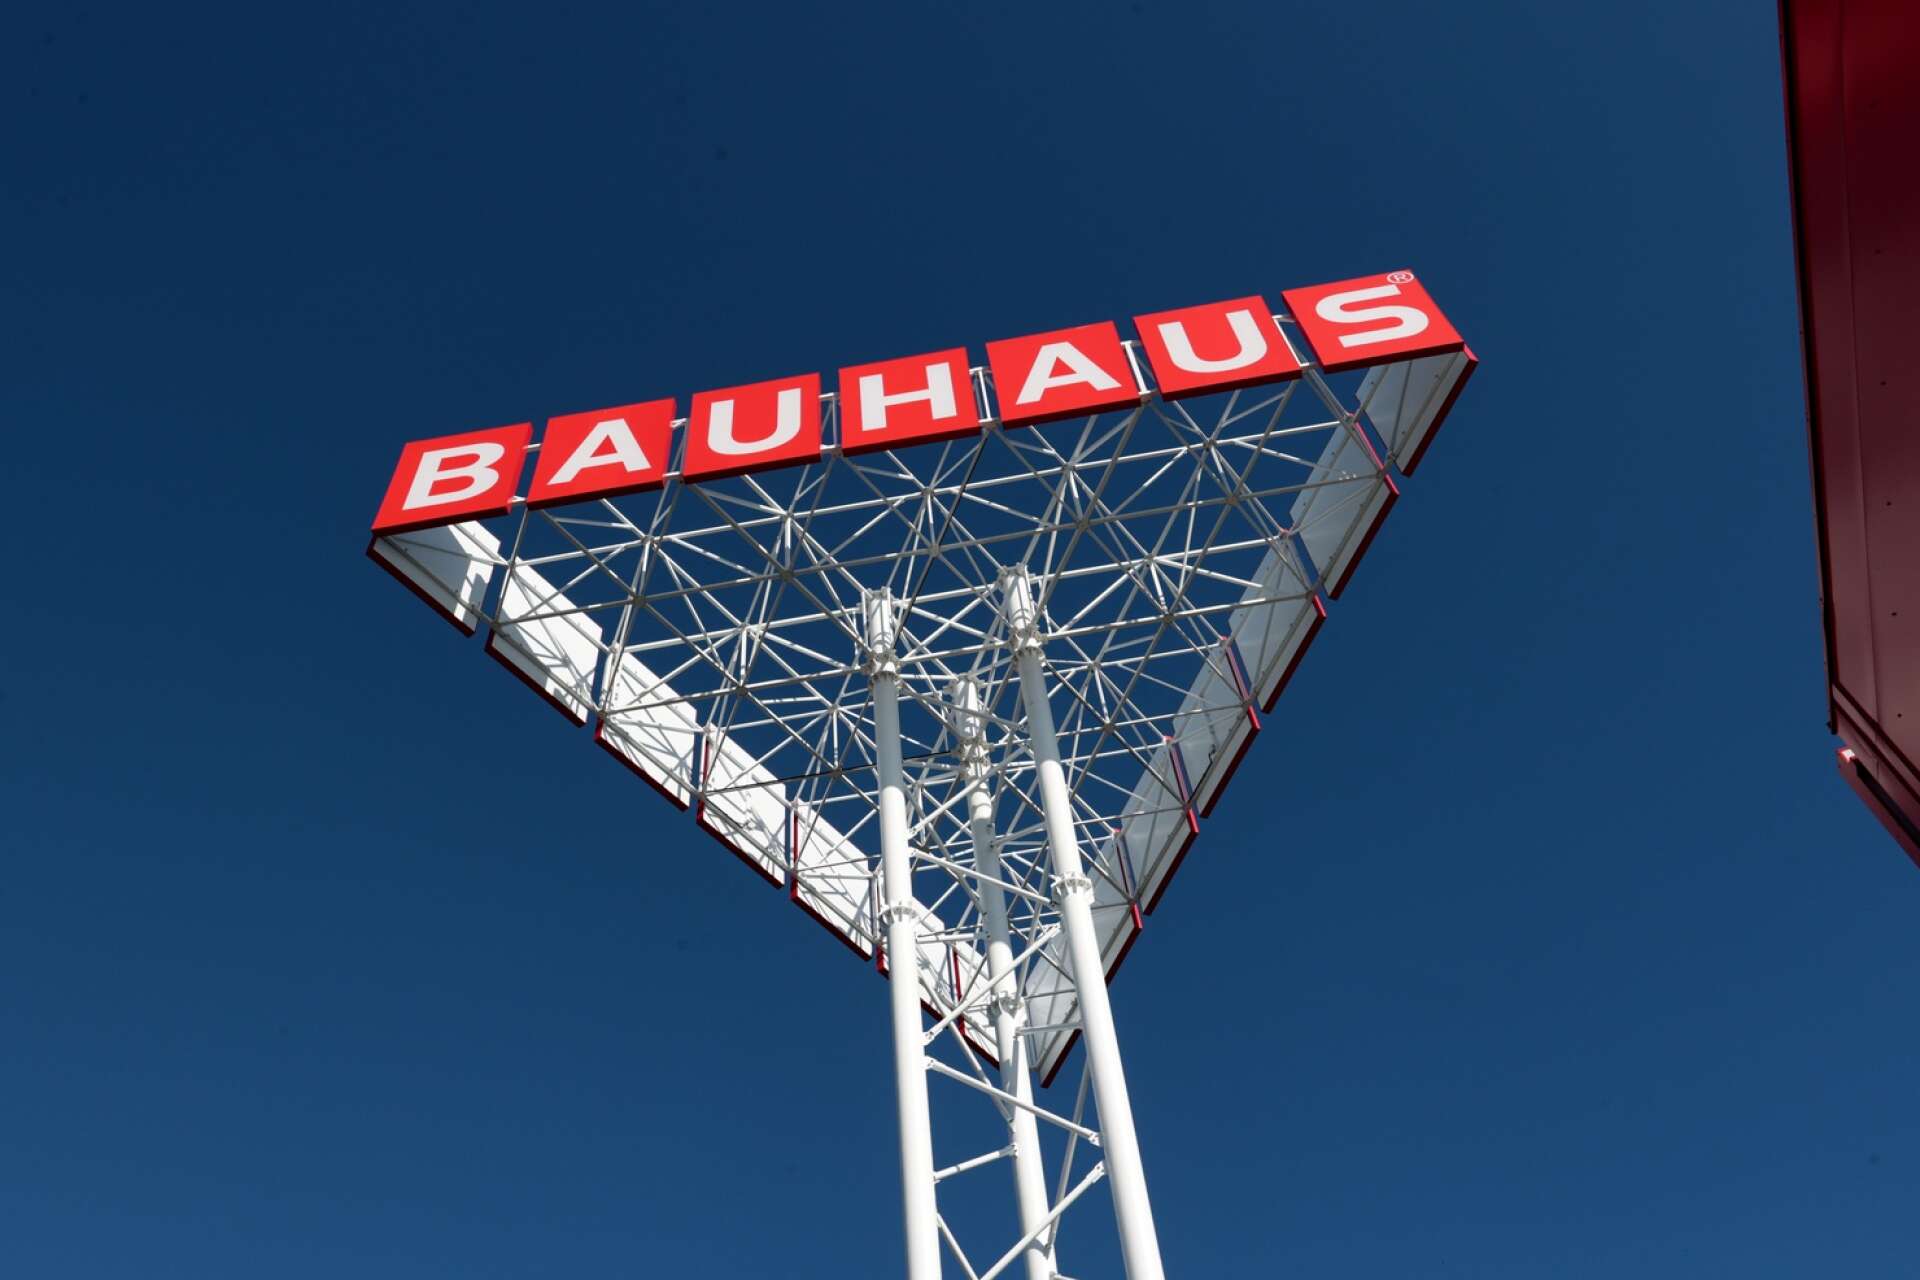 I mitten av november slår Bauhaus upp portarna.